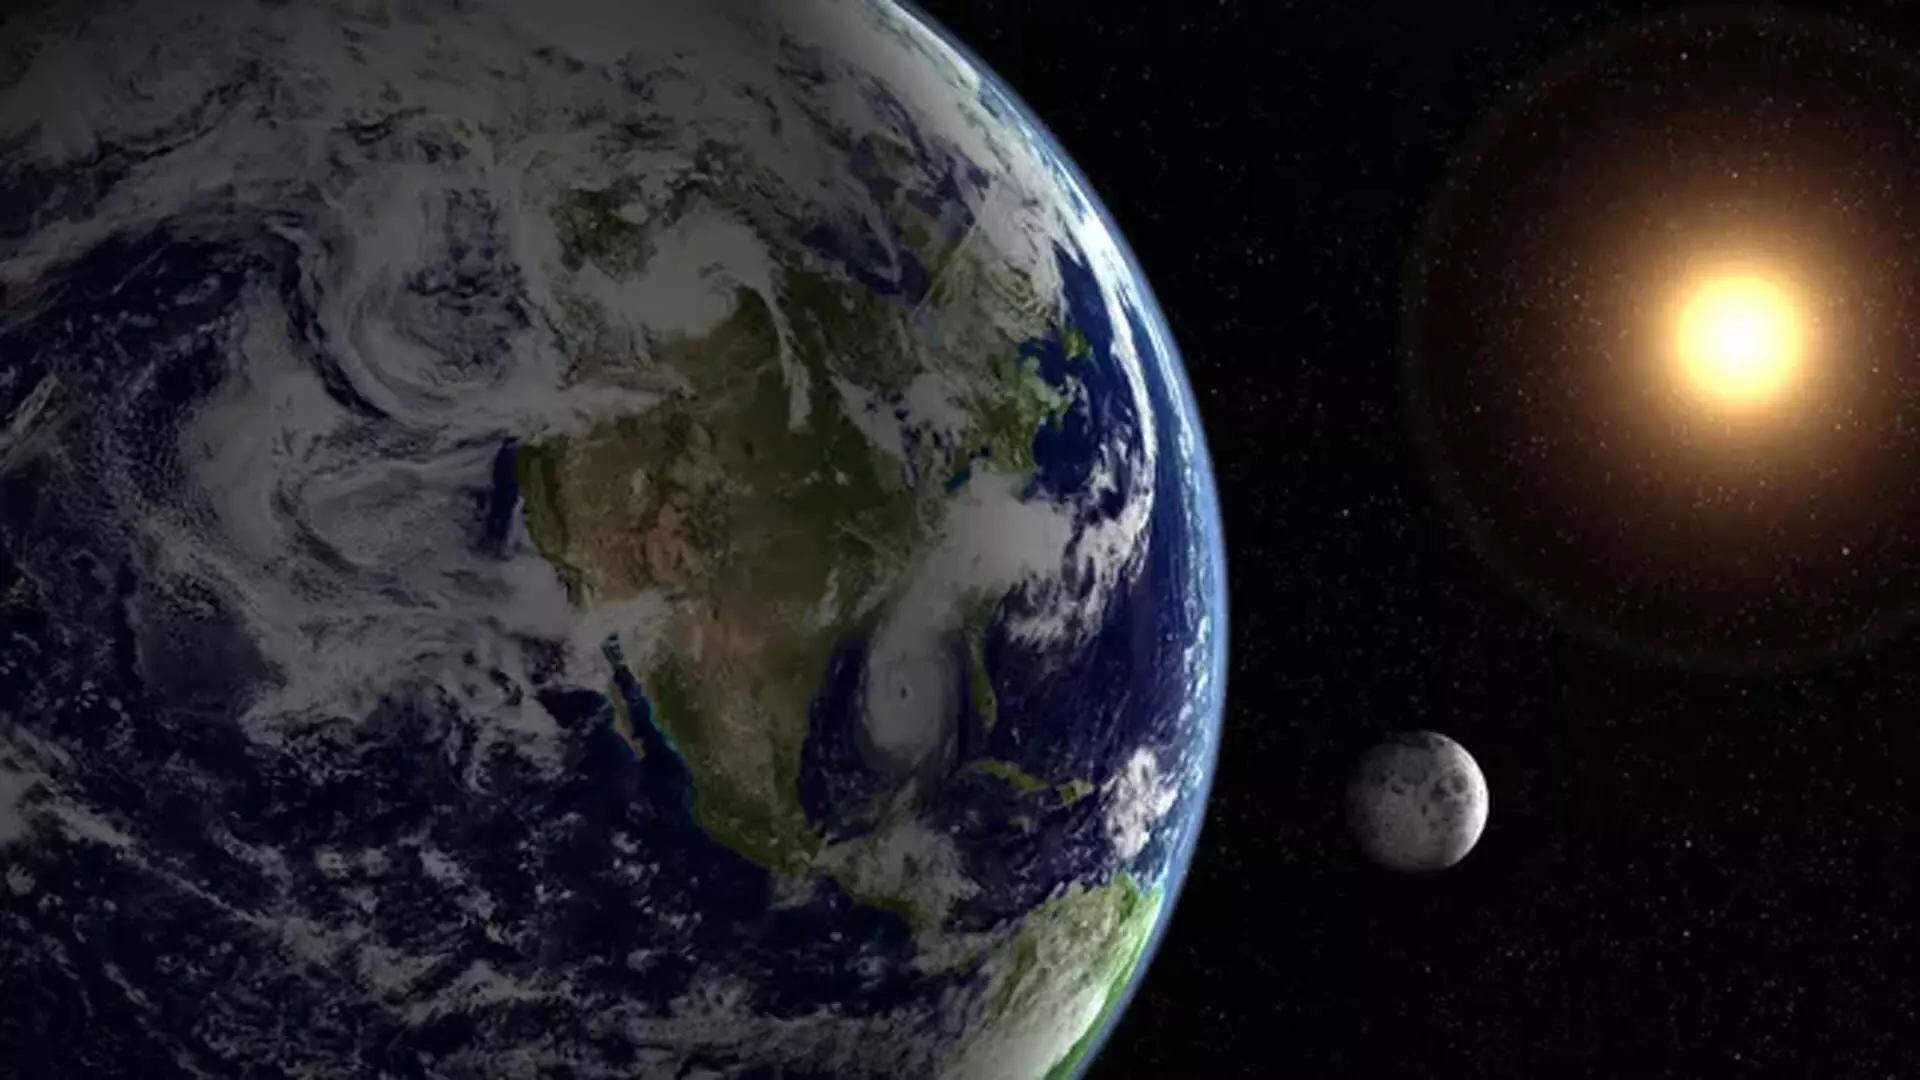 SCIENCE: पृथ्वी किस दिशा में घूमती है? अन्य ग्रहों के बारे में क्या?